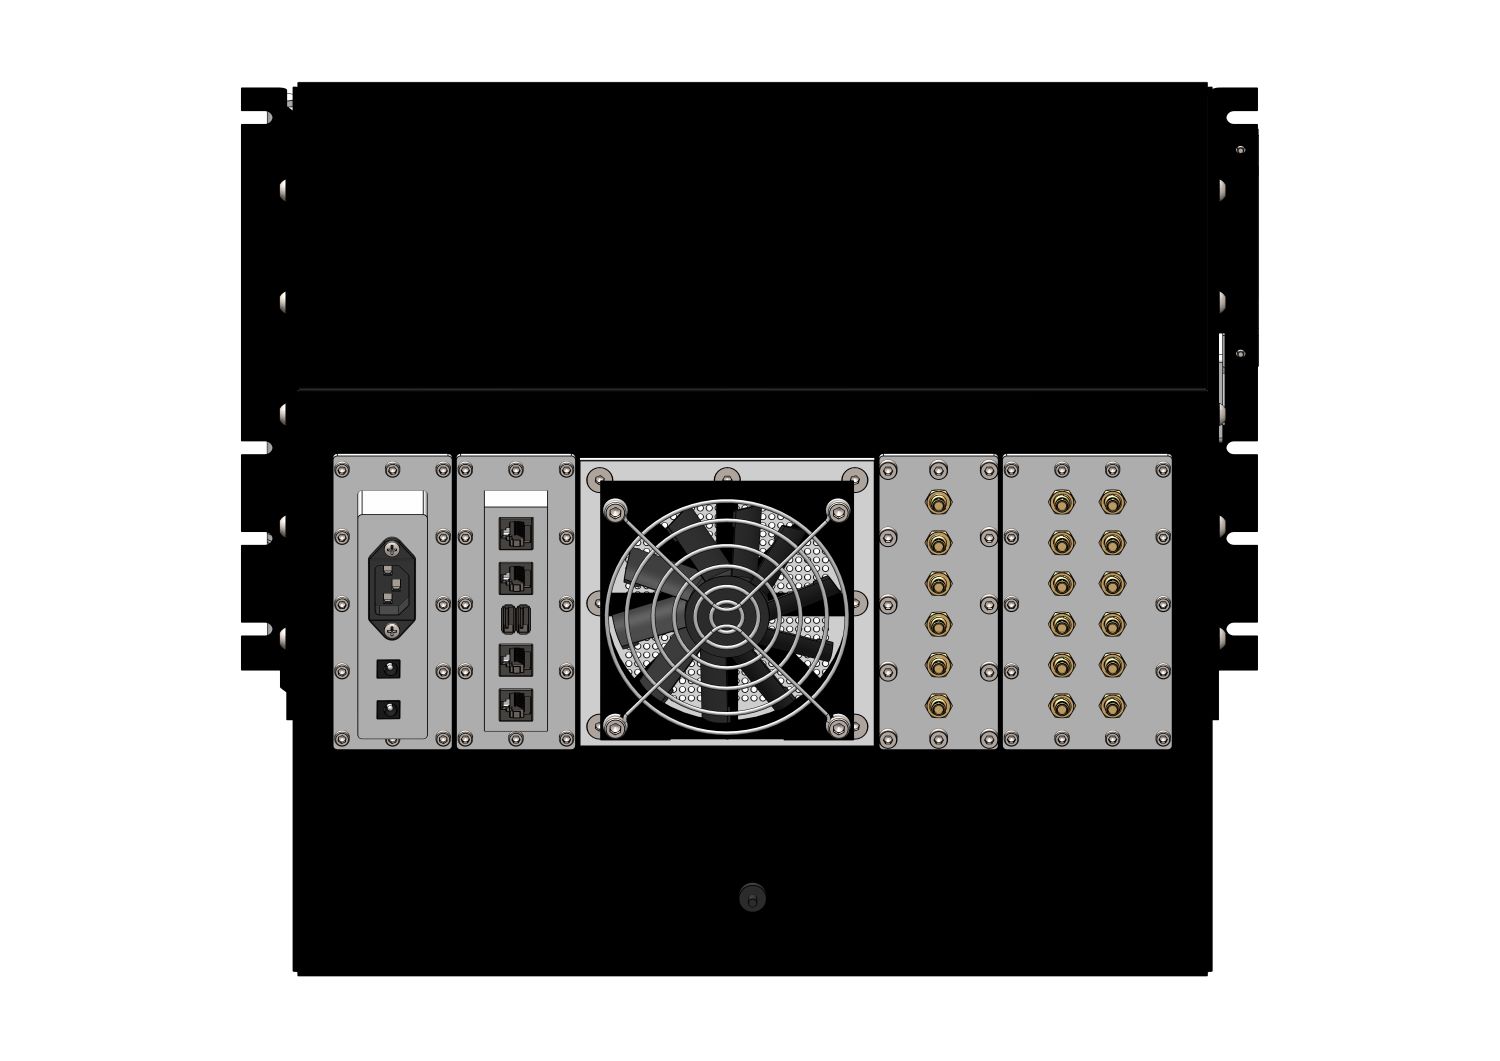 HDRF-1160-AK RF Shield Test Box